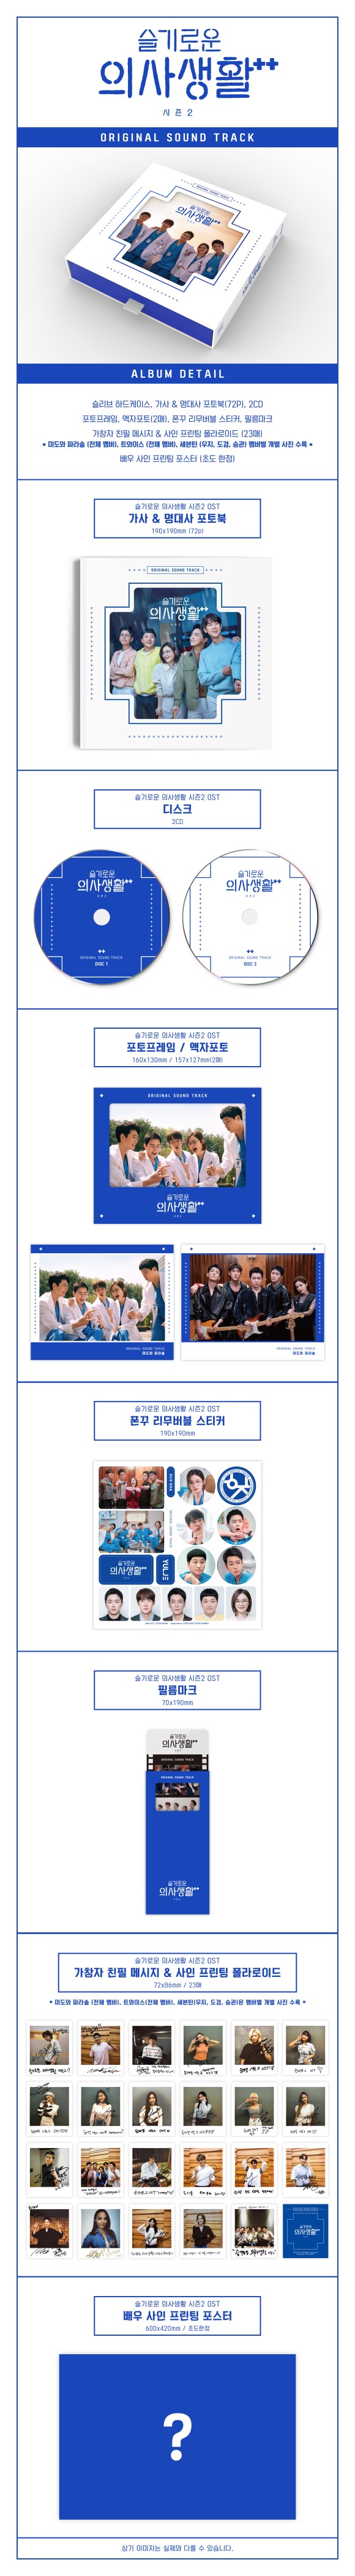 大ヒット韓国ドラマ『賢い医師生活』シーズン2 サントラ盤が2CDで登場 - TOWER RECORDS ONLINE